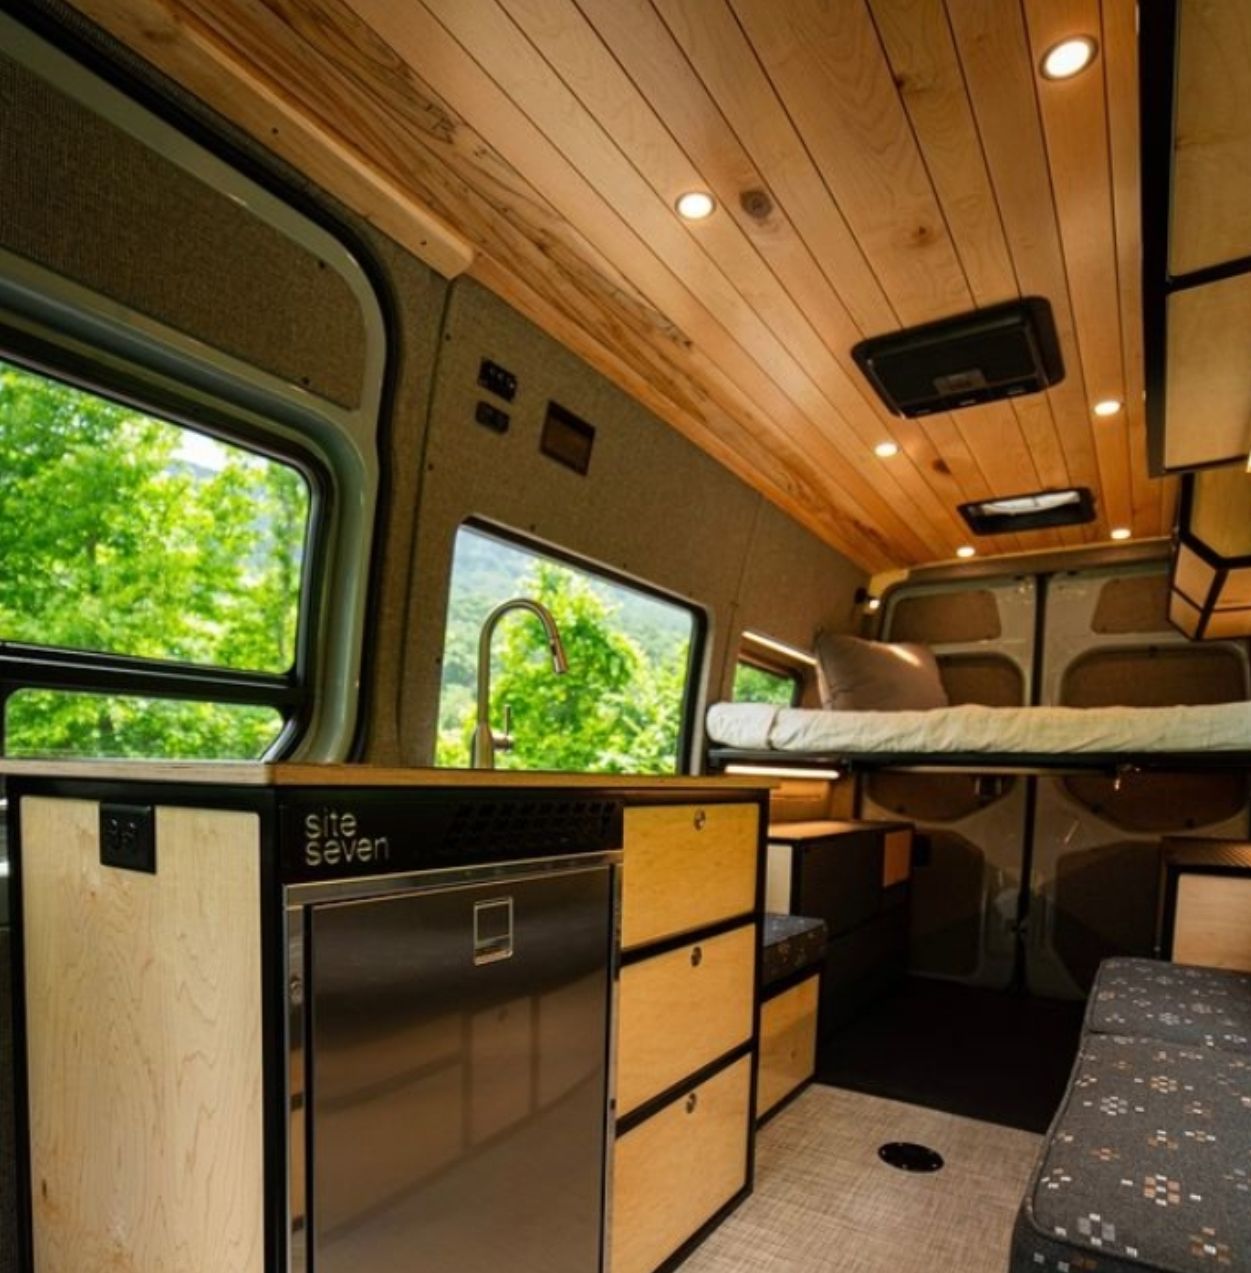 Foto desain interior mobil campervan, klasik, modern, dan nyaman